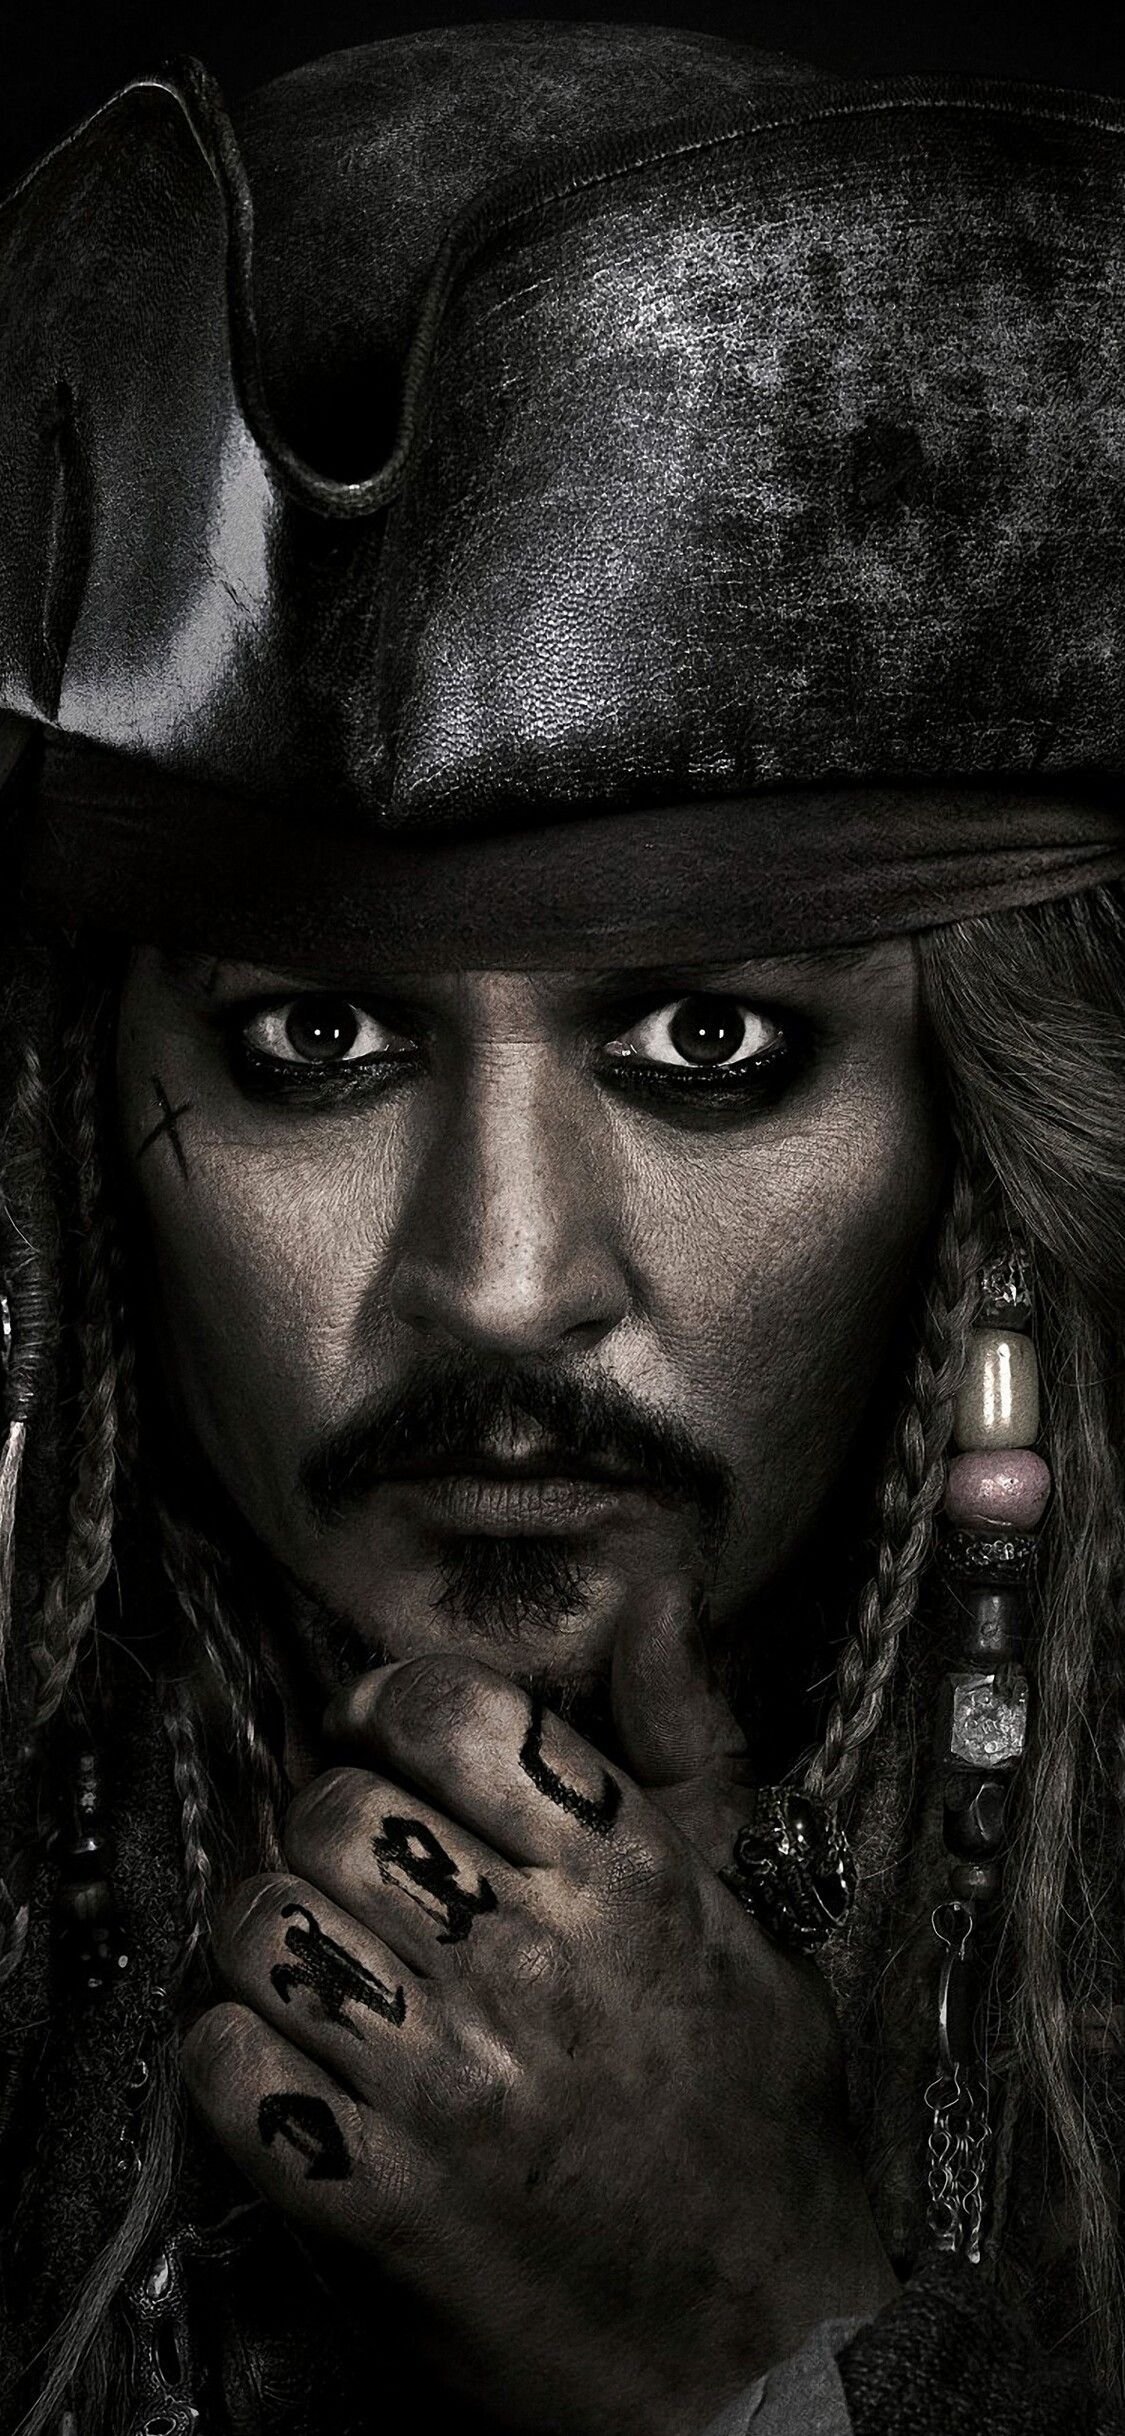 Captain Jack Sparrow Wallpaper Download | MobCup